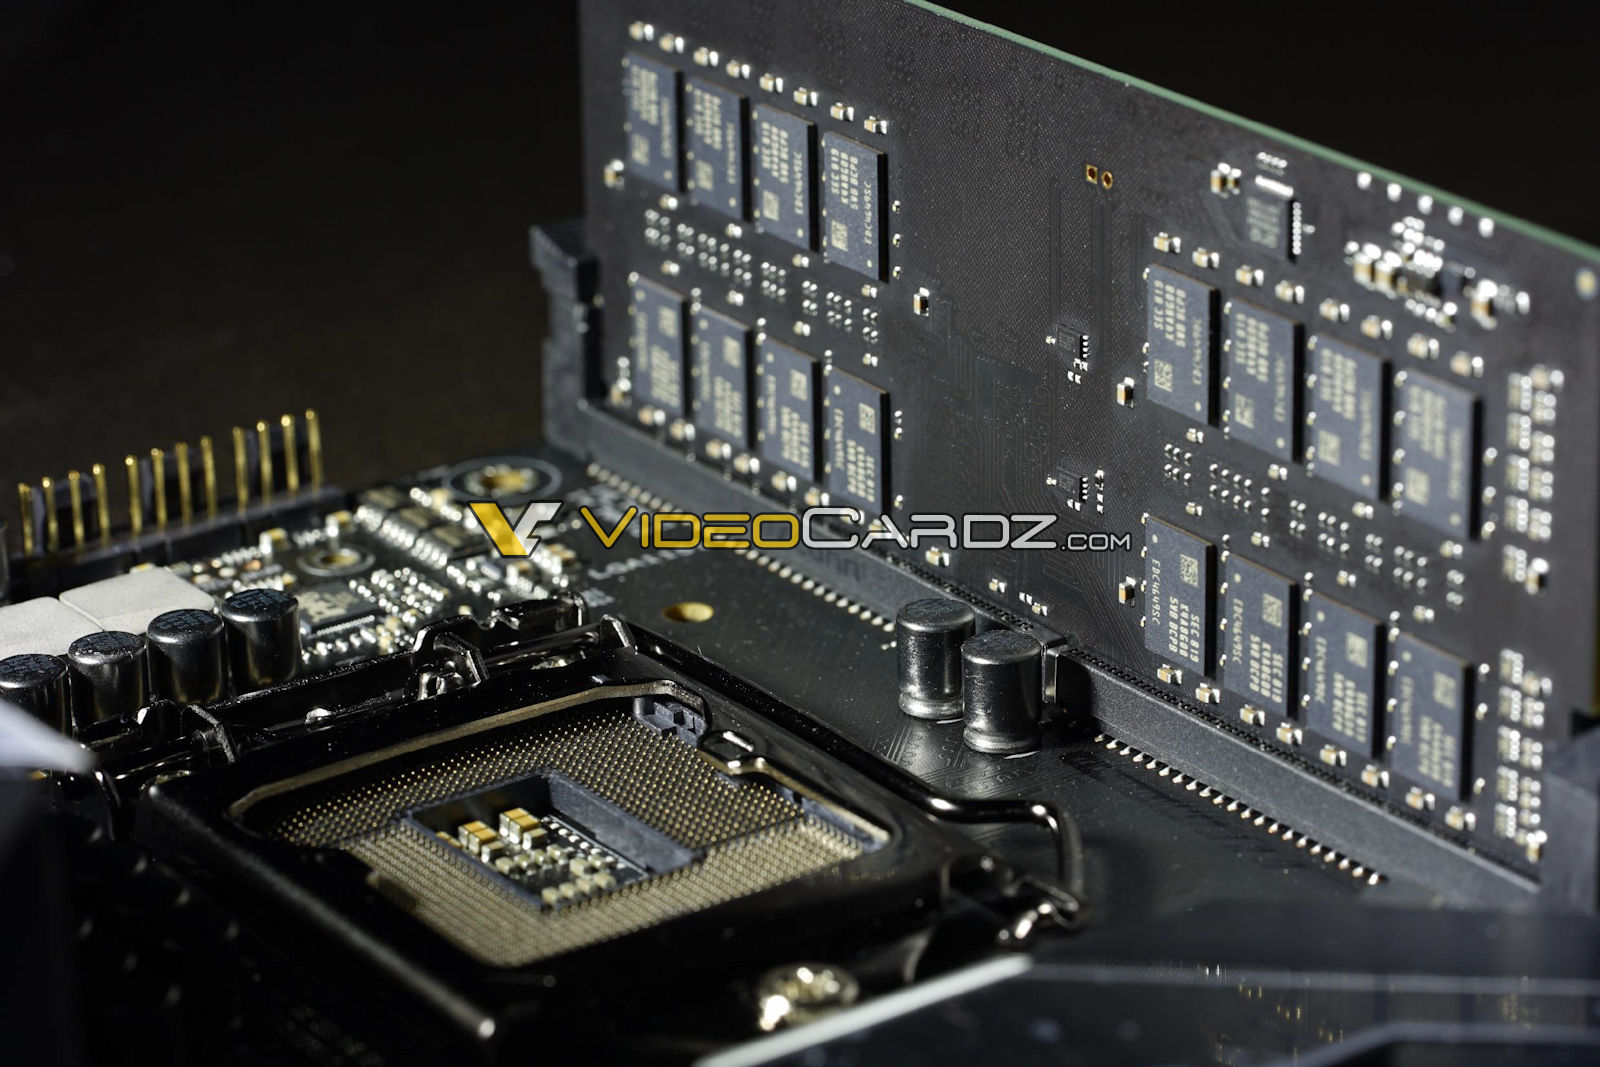 FOR ASUS PRIME Z390-A z390 Gaming Support i9 9900k DDR4 Motherboard Test OK